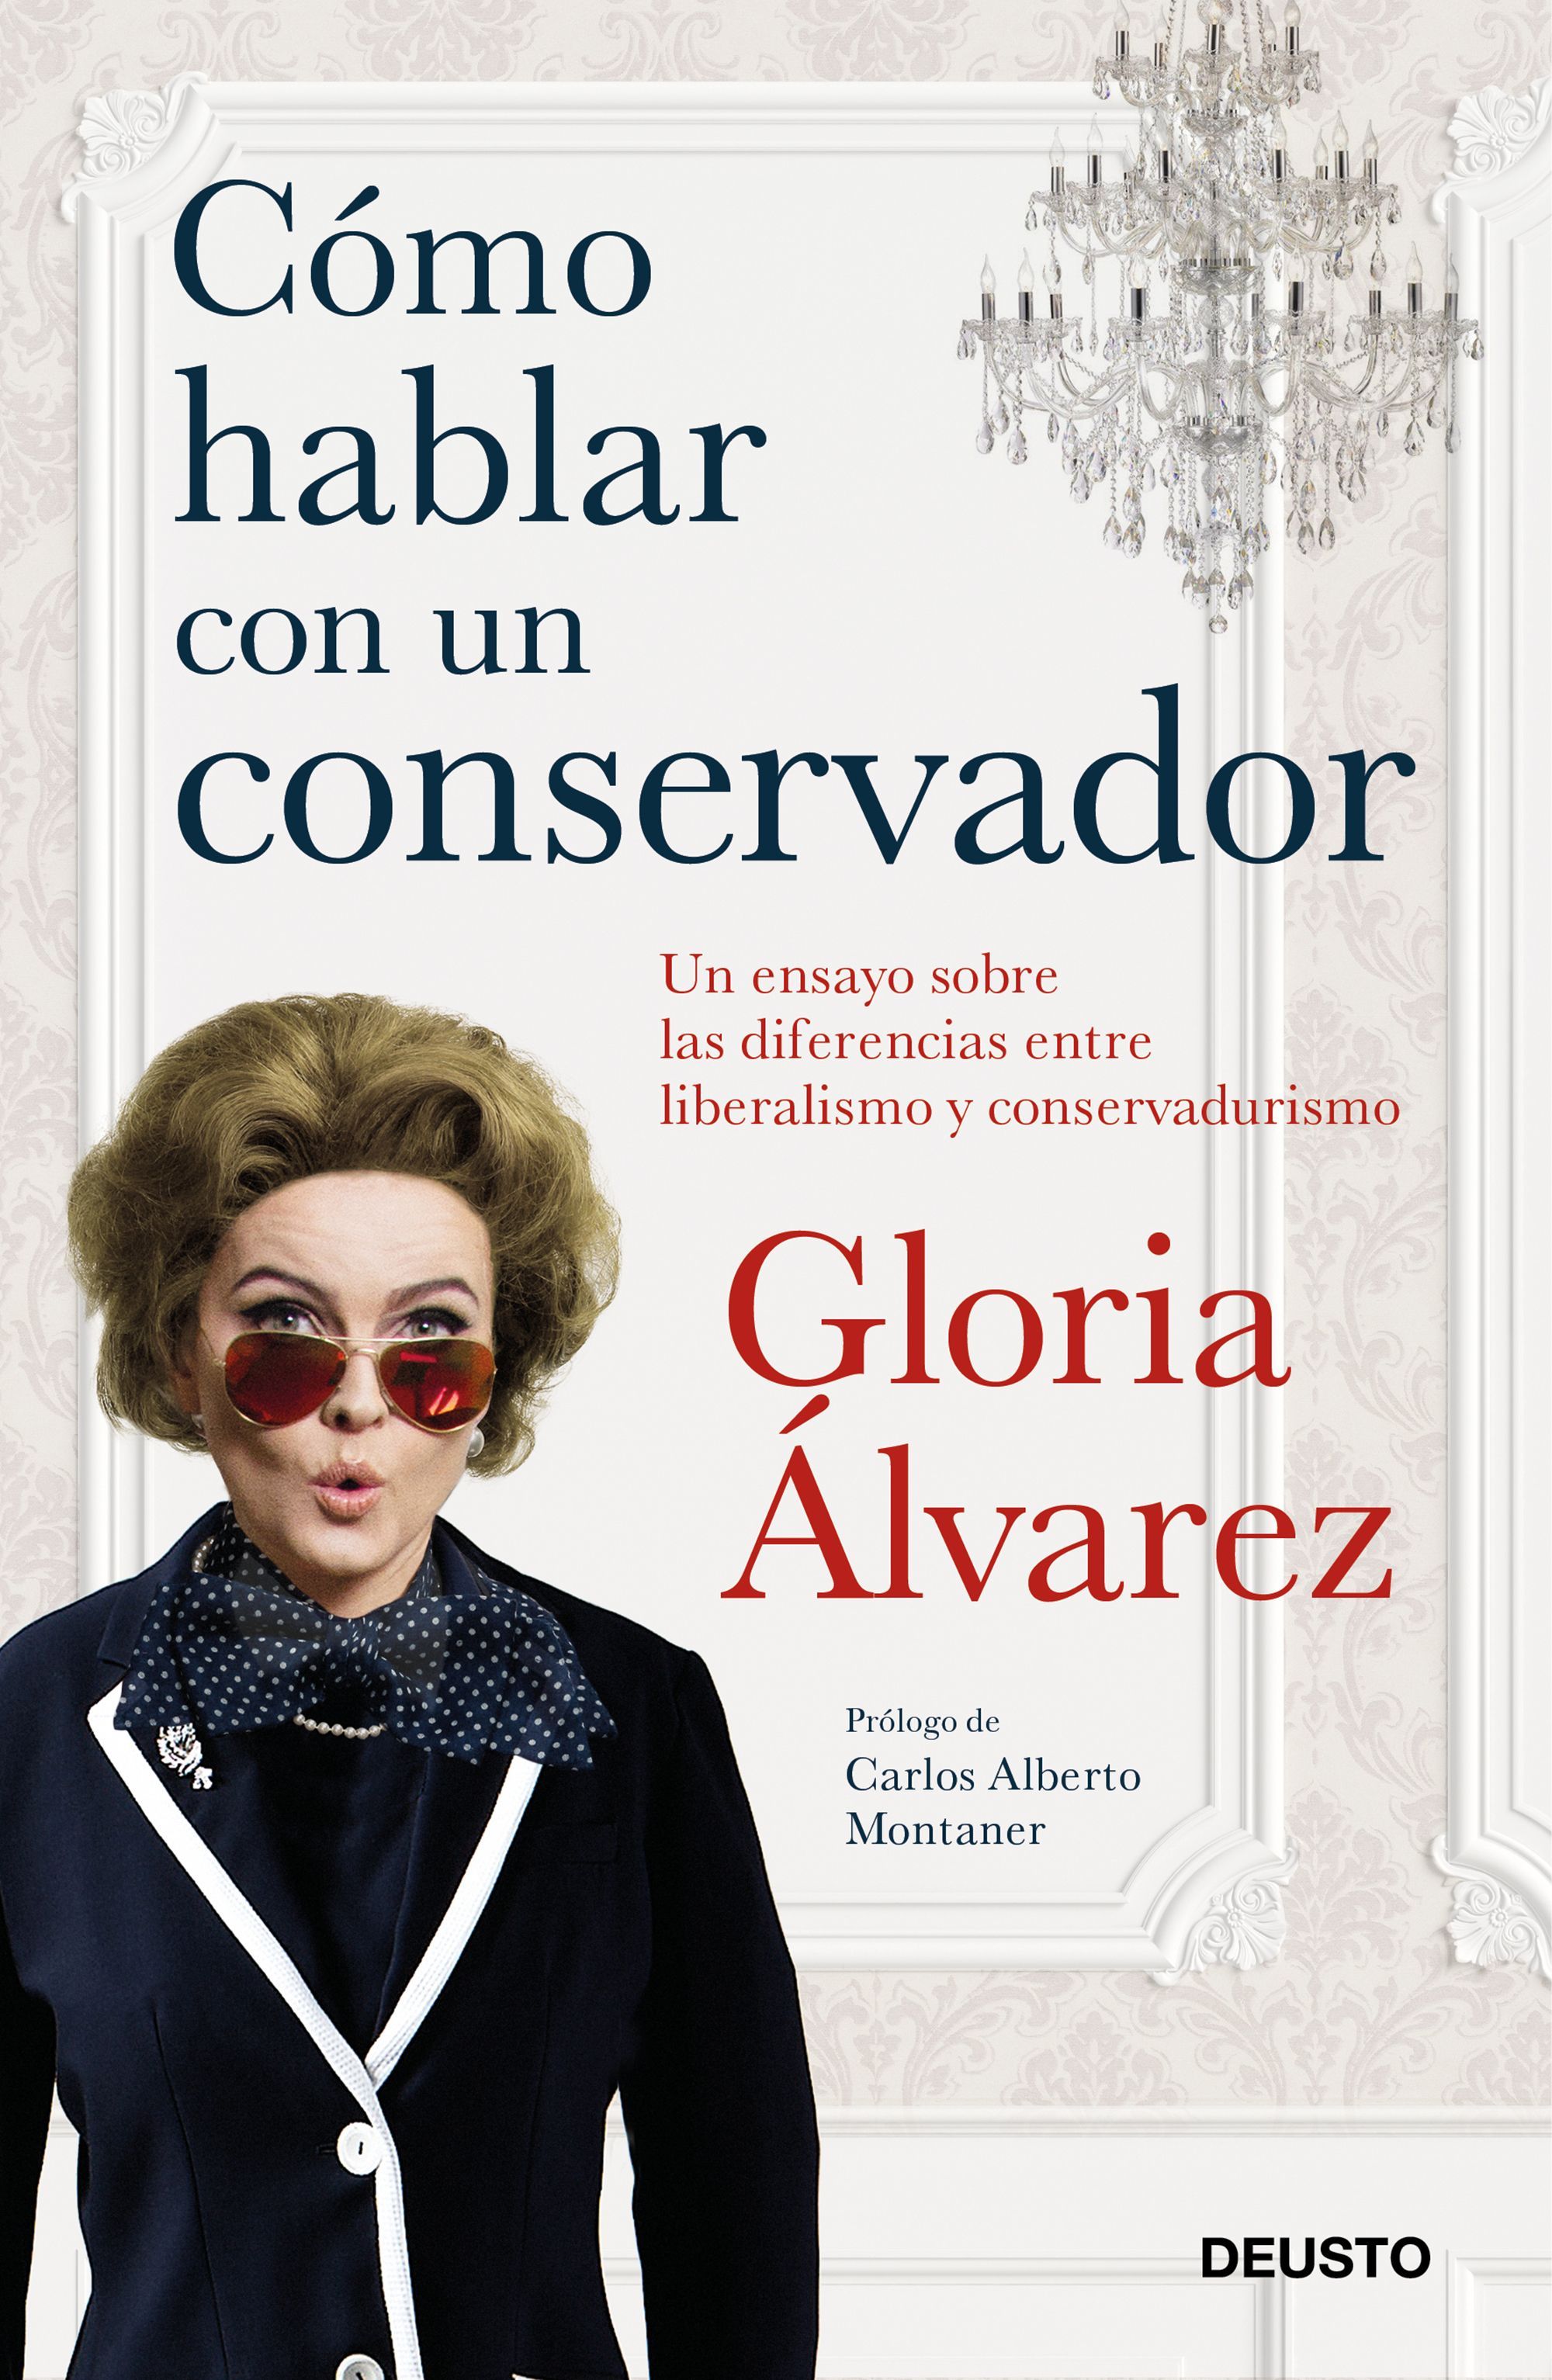 La politóloga Gloria Álvarez explica Cómo hablar con un conservador